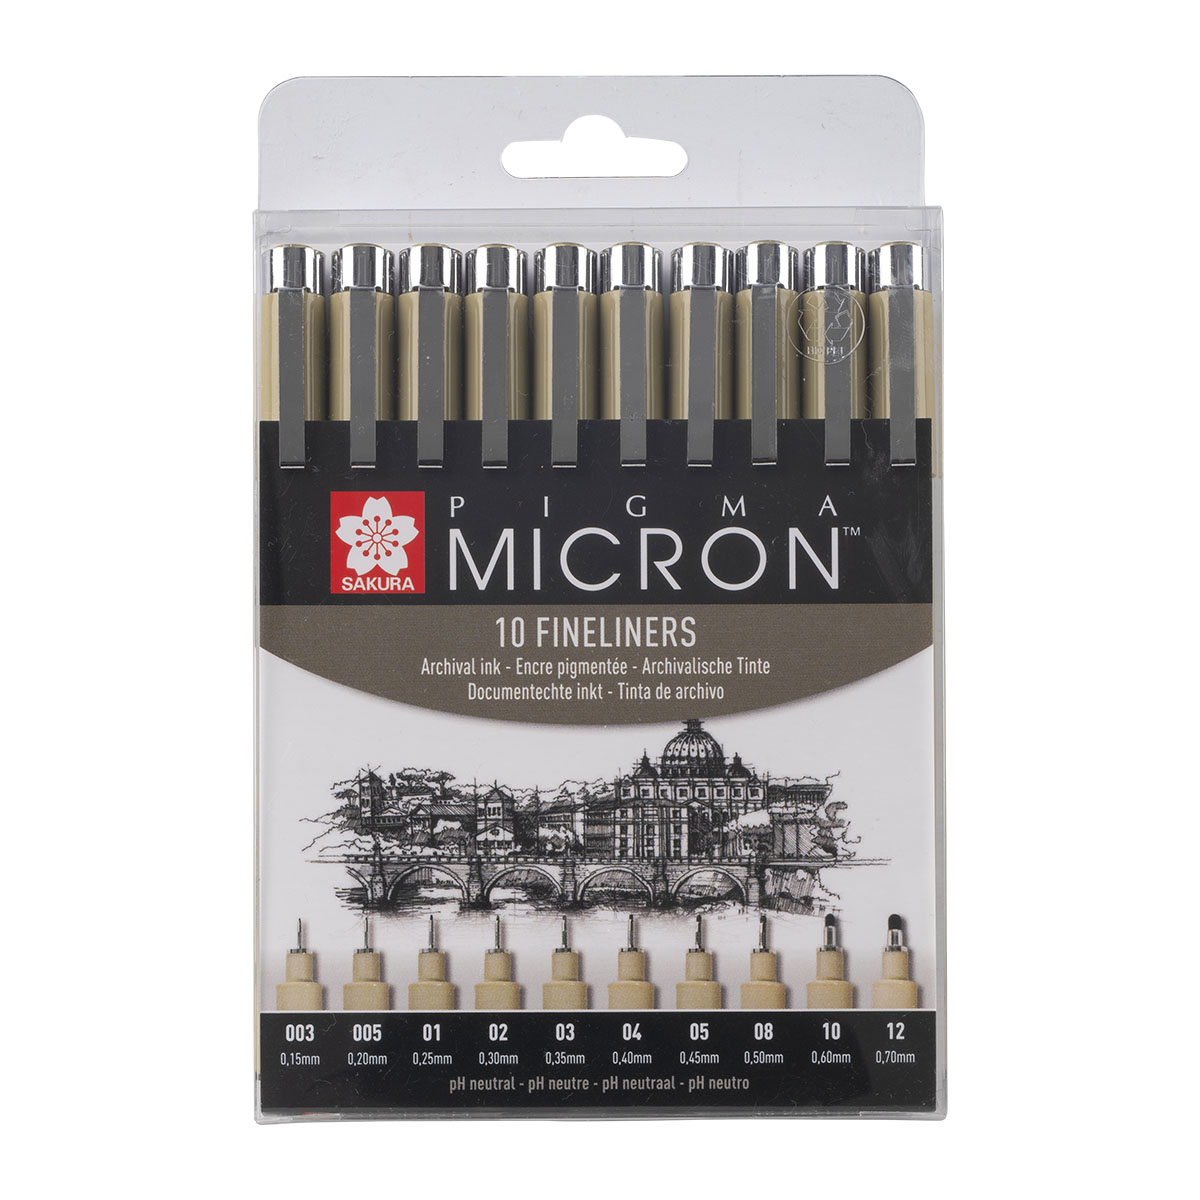 Pigma Micron Fineliner 10-set Black dans le groupe Stylos / Série de produits / Pigma Micron chez Pen Store (125574)